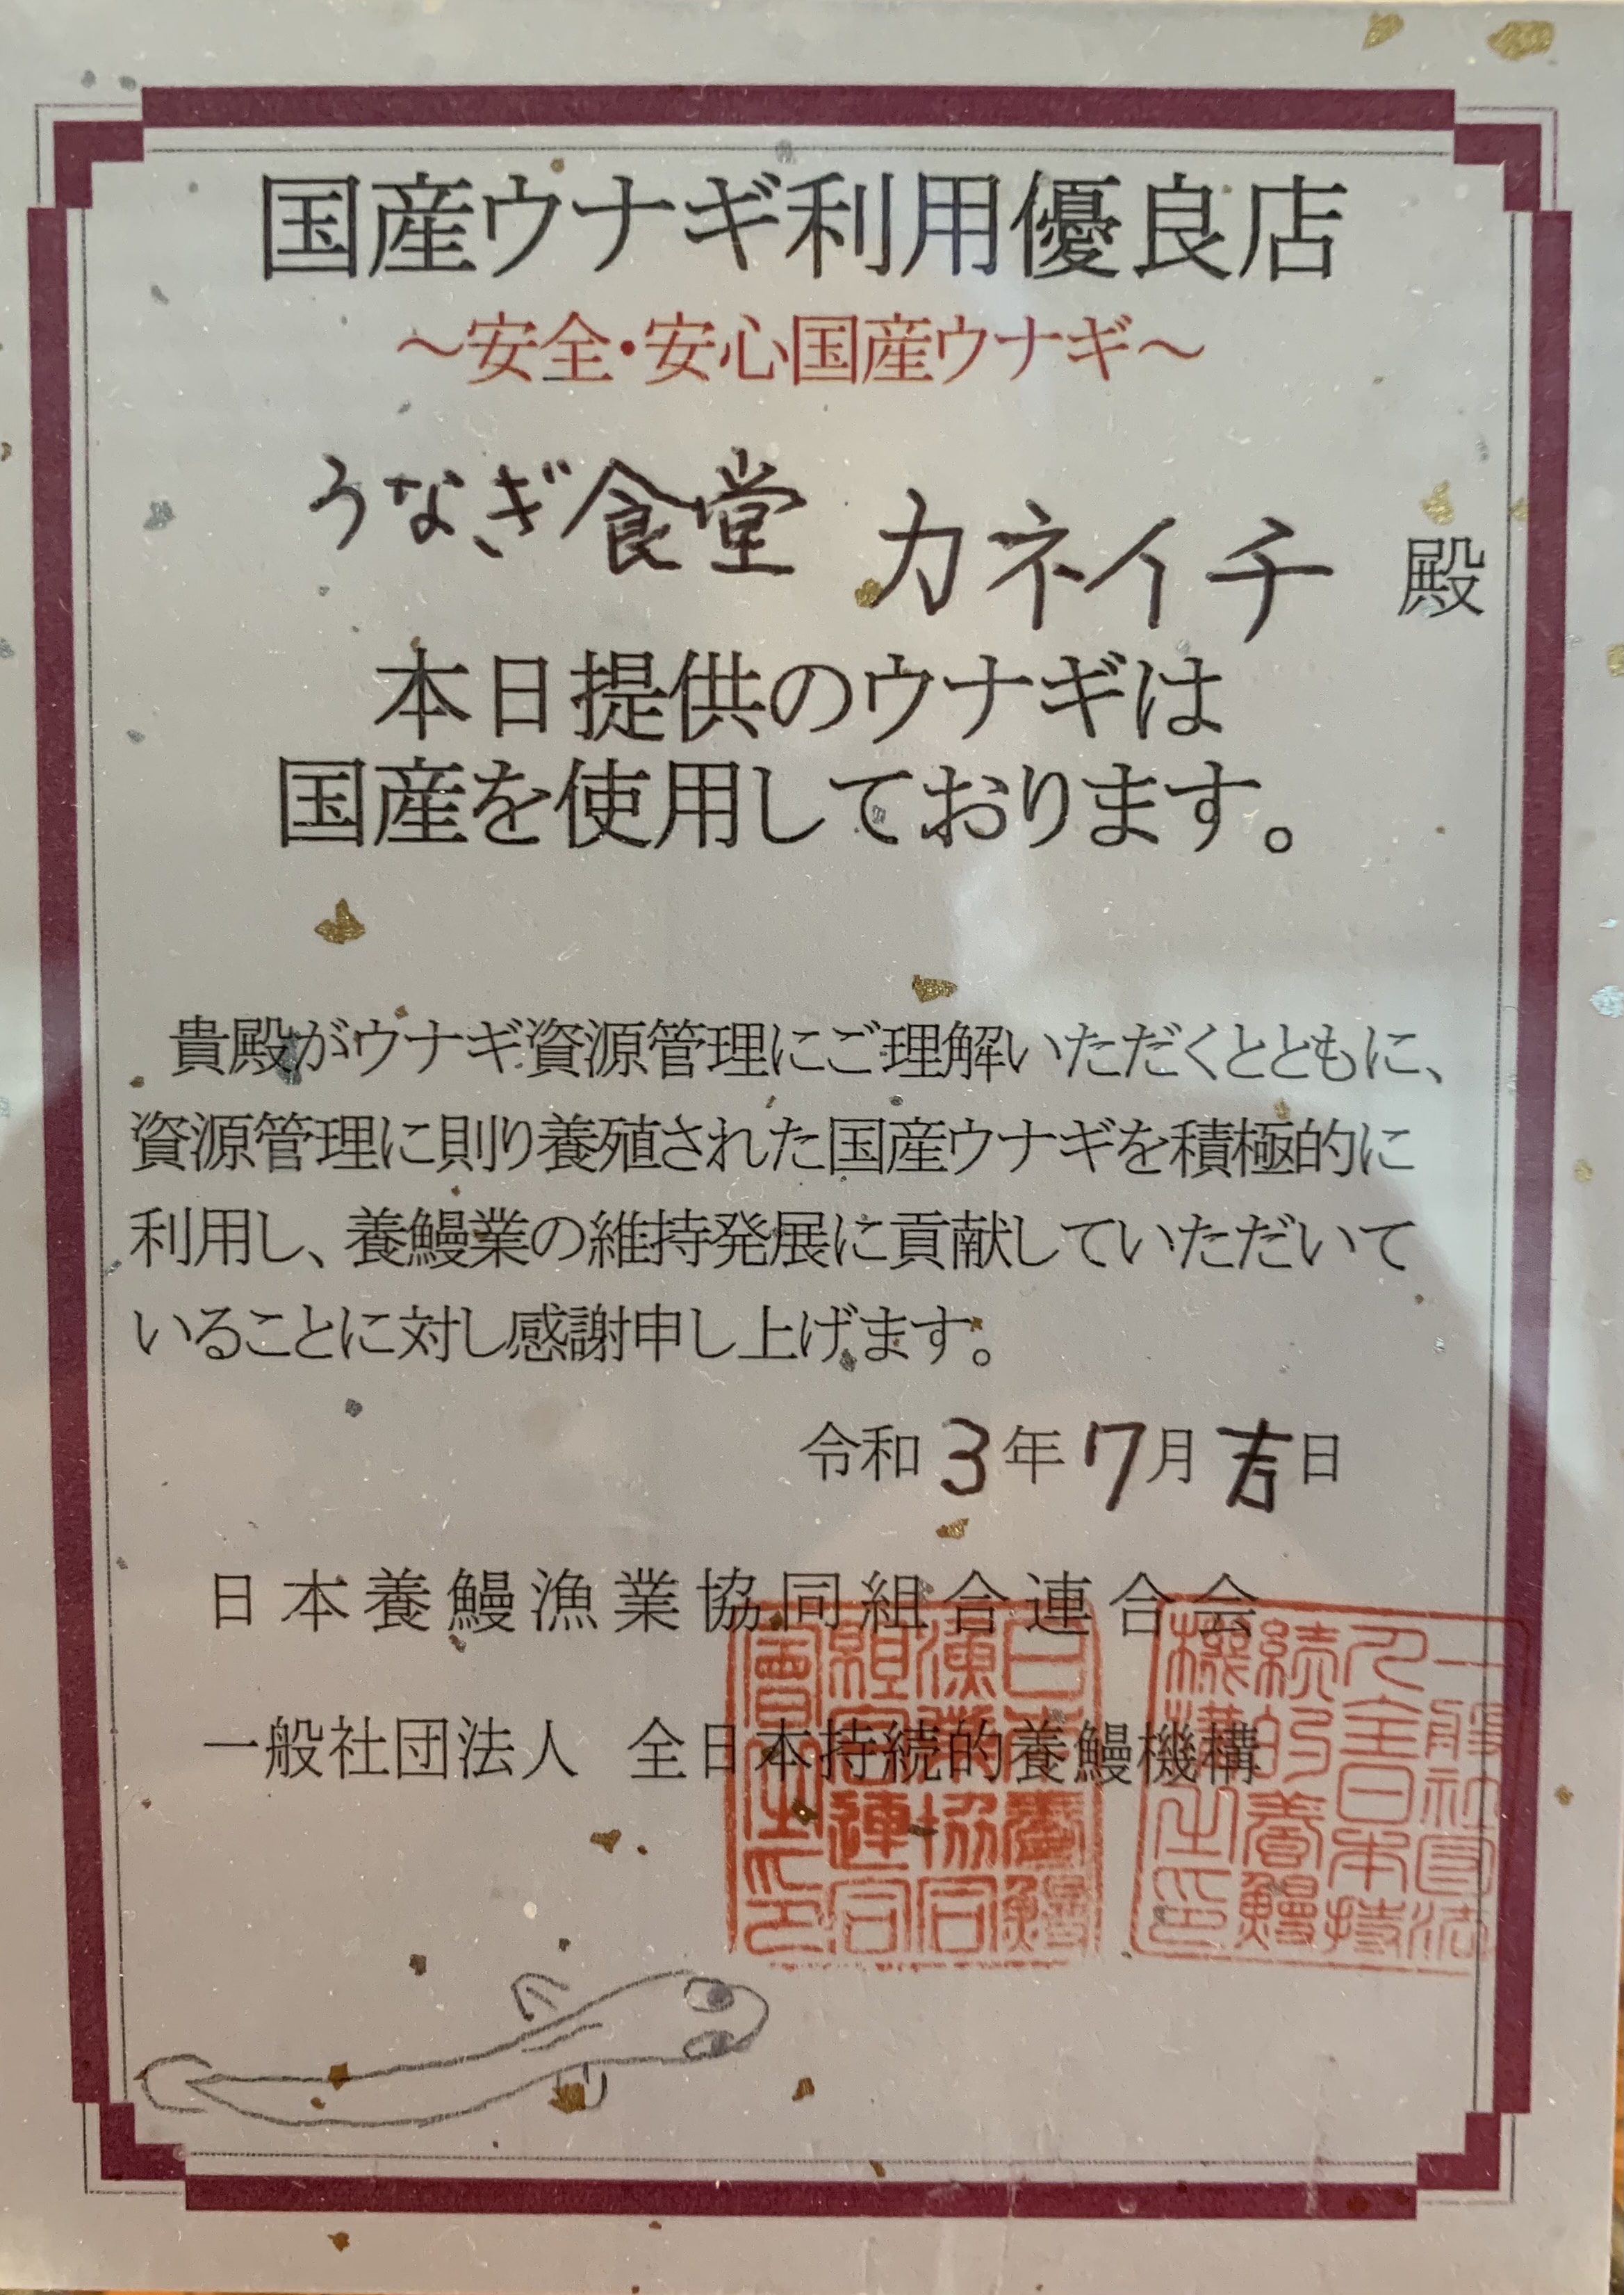 国産鰻使用専門店として日本養鰻漁業協同組合連合会、一般社団法人　全日本持続的養鰻機構より認証
　